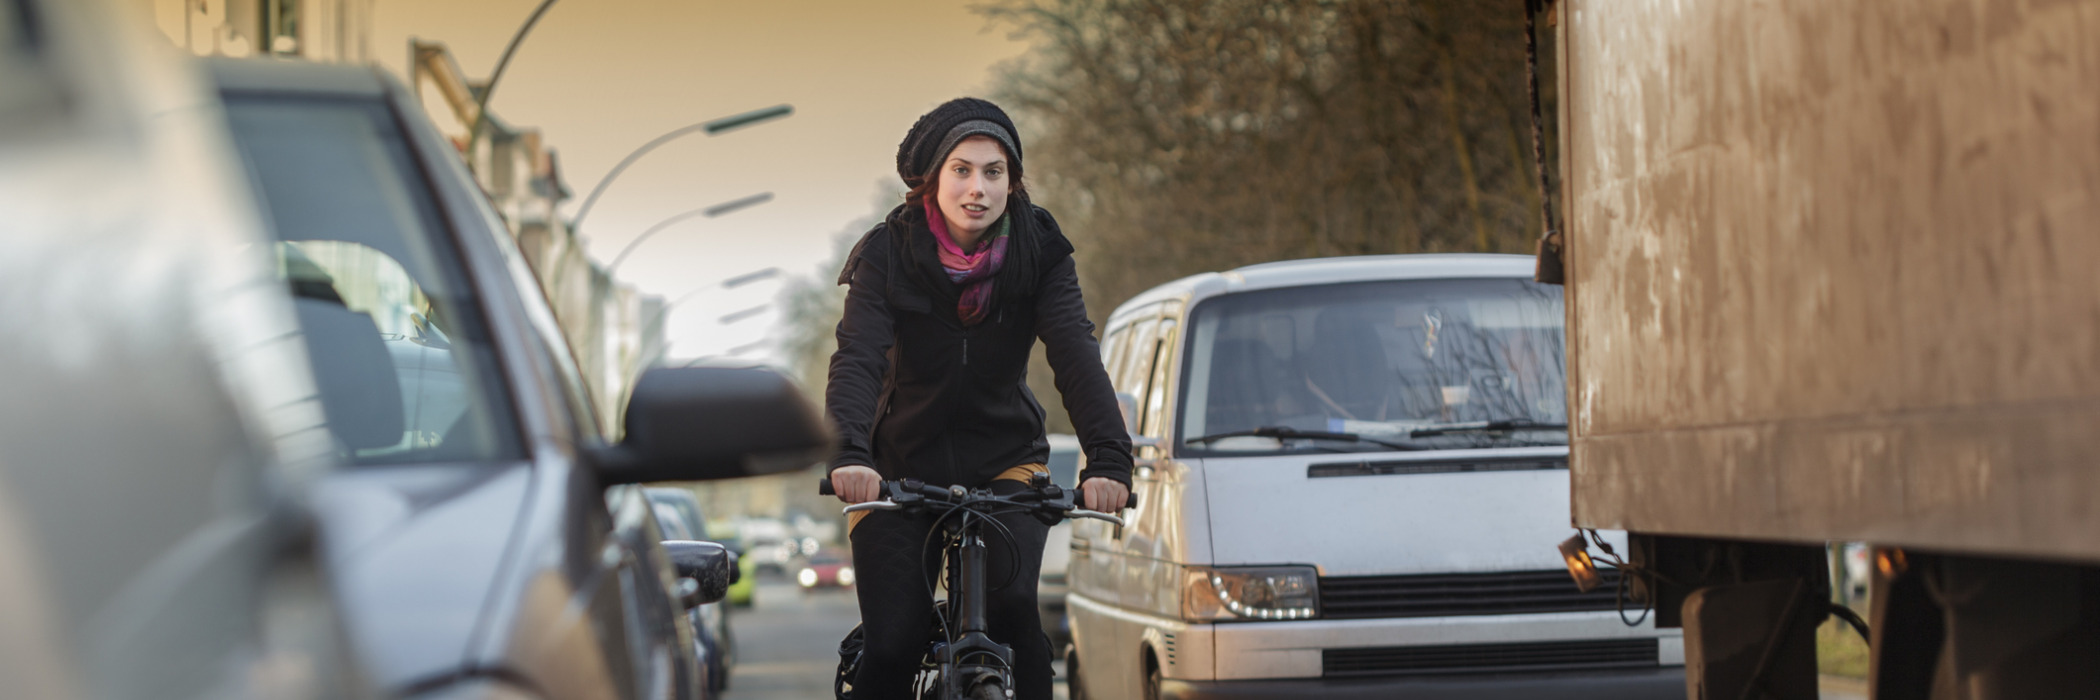 Seberapa Berbahaya Polusi Udara bagi Kesehatan Saya? Banyak pengendara sepeda di kota -kota Jerman mengajukan pertanyaan yang sama